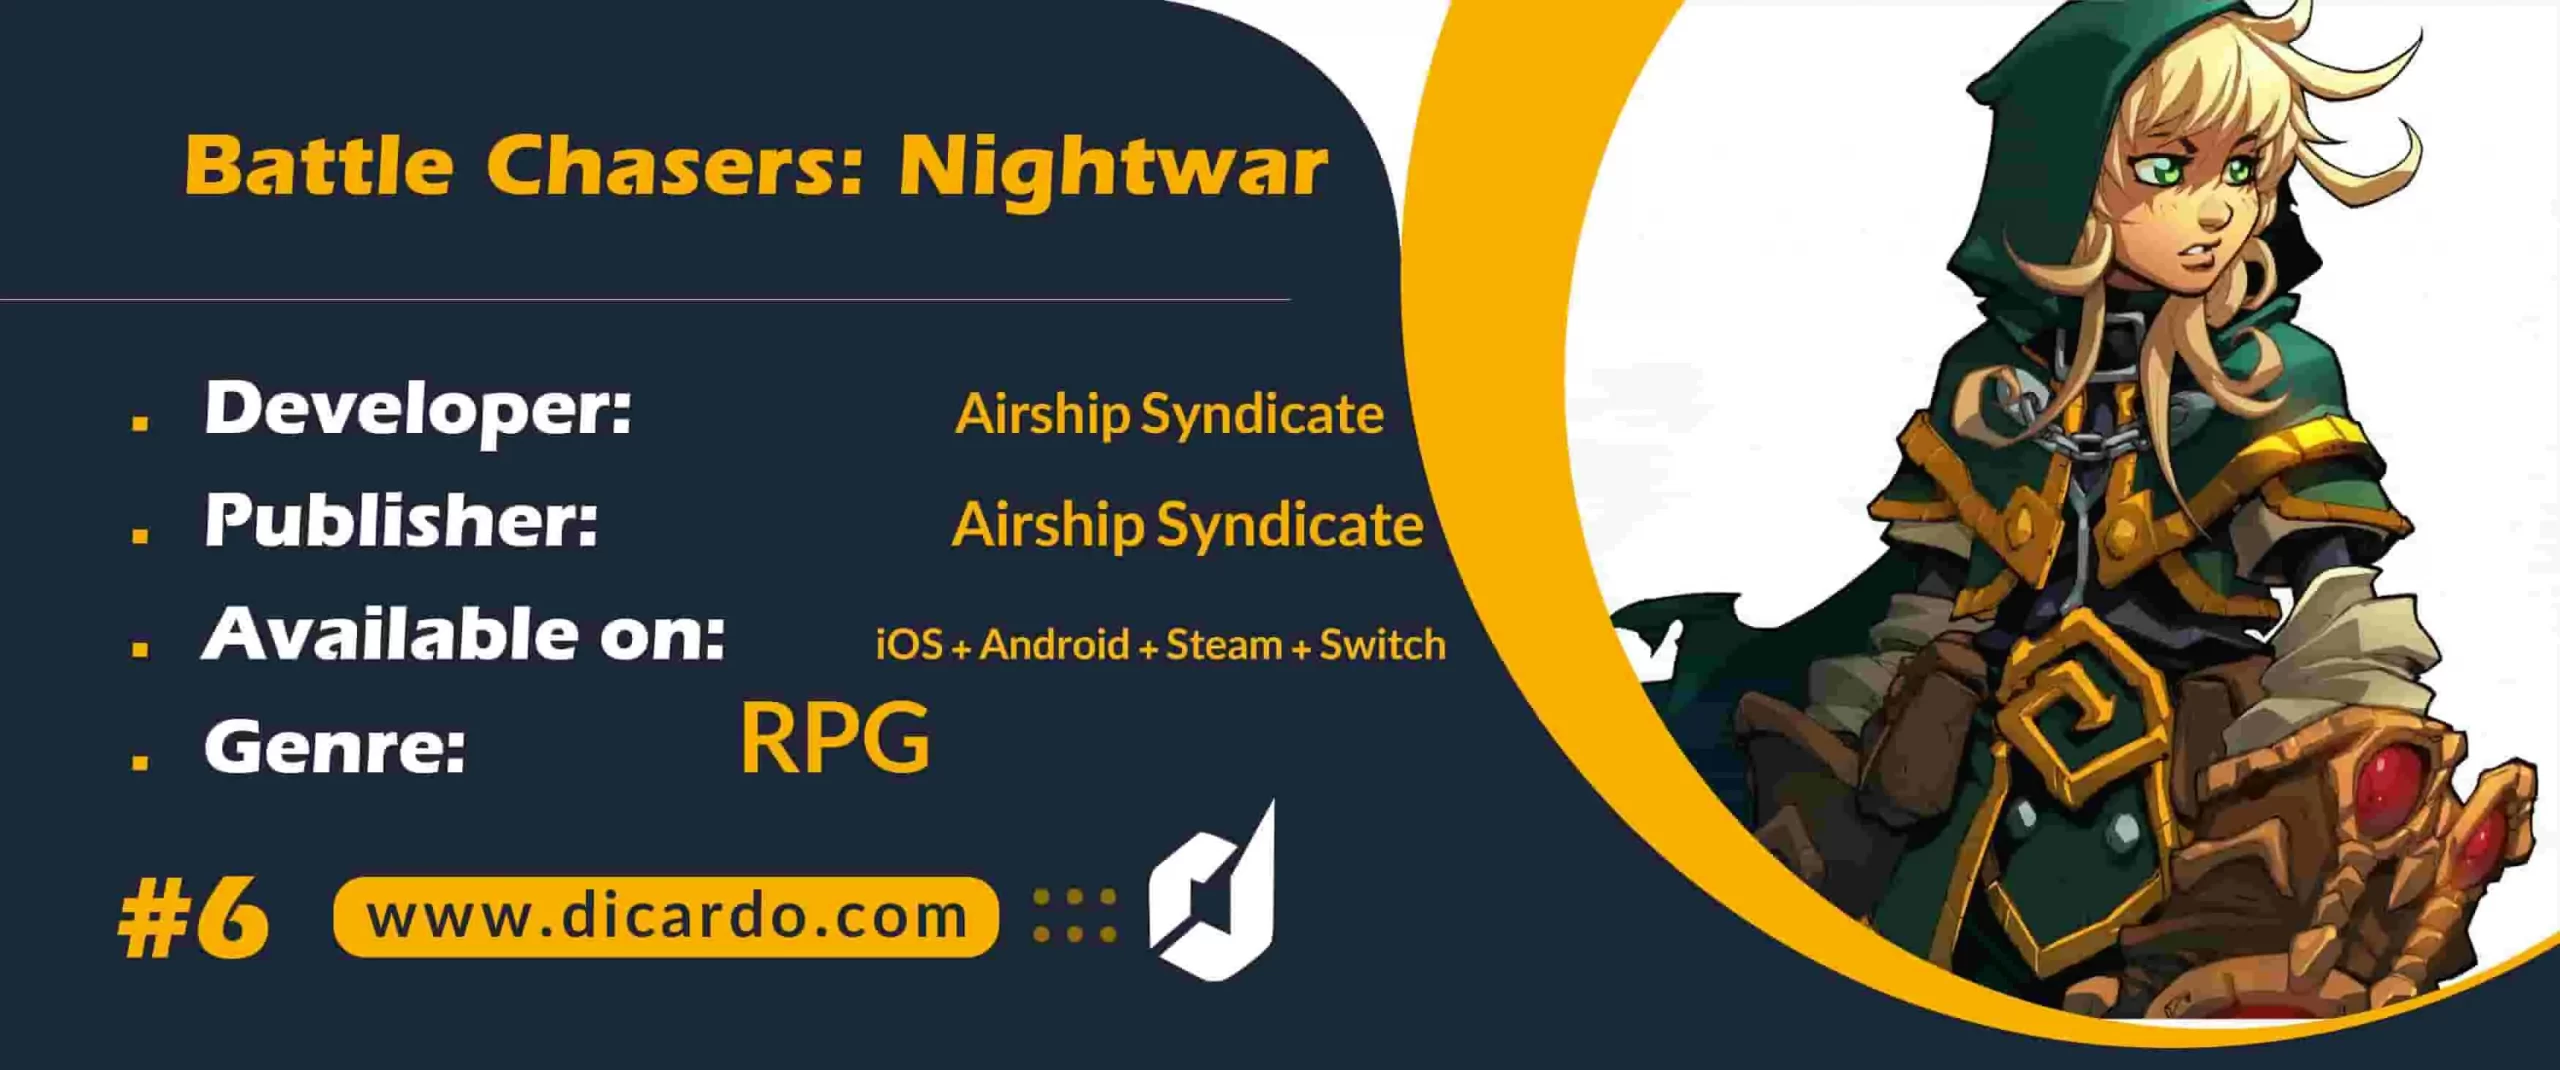 #6 بتل چیسرز: نایت وار Battle Chasers: Nightwar از بهترین بازیهای JRPG برای آیفون و آیپد